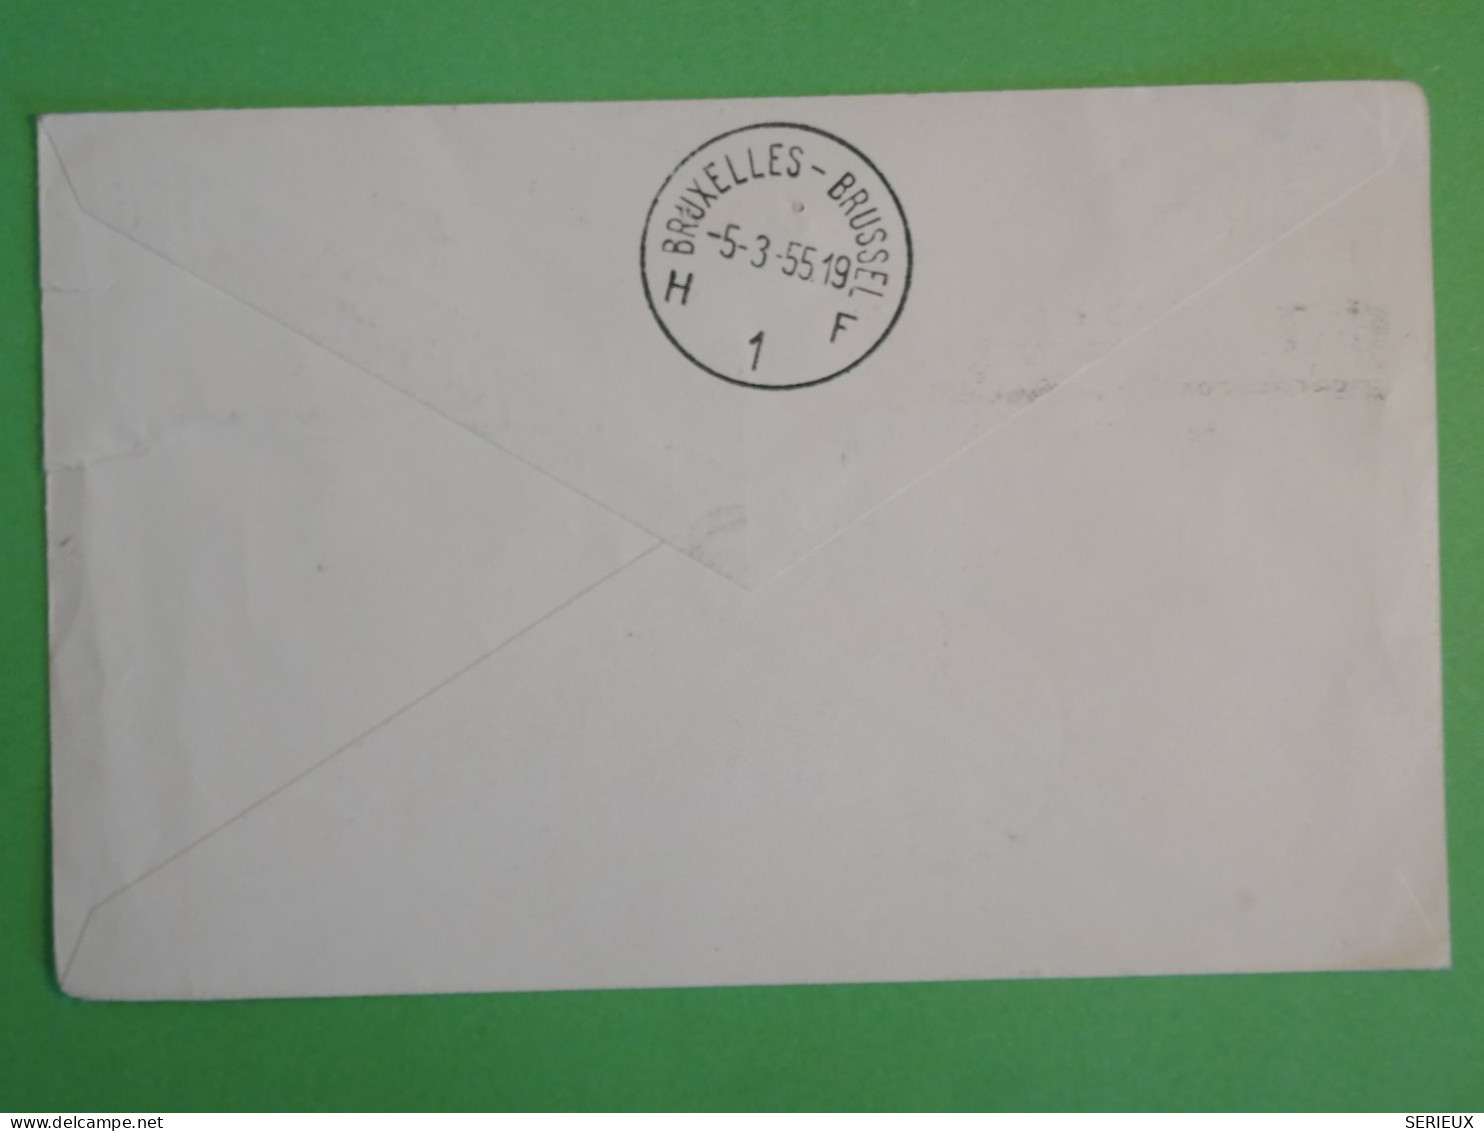 BS16 CONGO BELGE   BELLE LETTRE RR 1958  LIAISON AVION  LEOPOLDVILLE A JETTE BELGIQUE  + AFFR. PLAISANT++ ++ - Covers & Documents